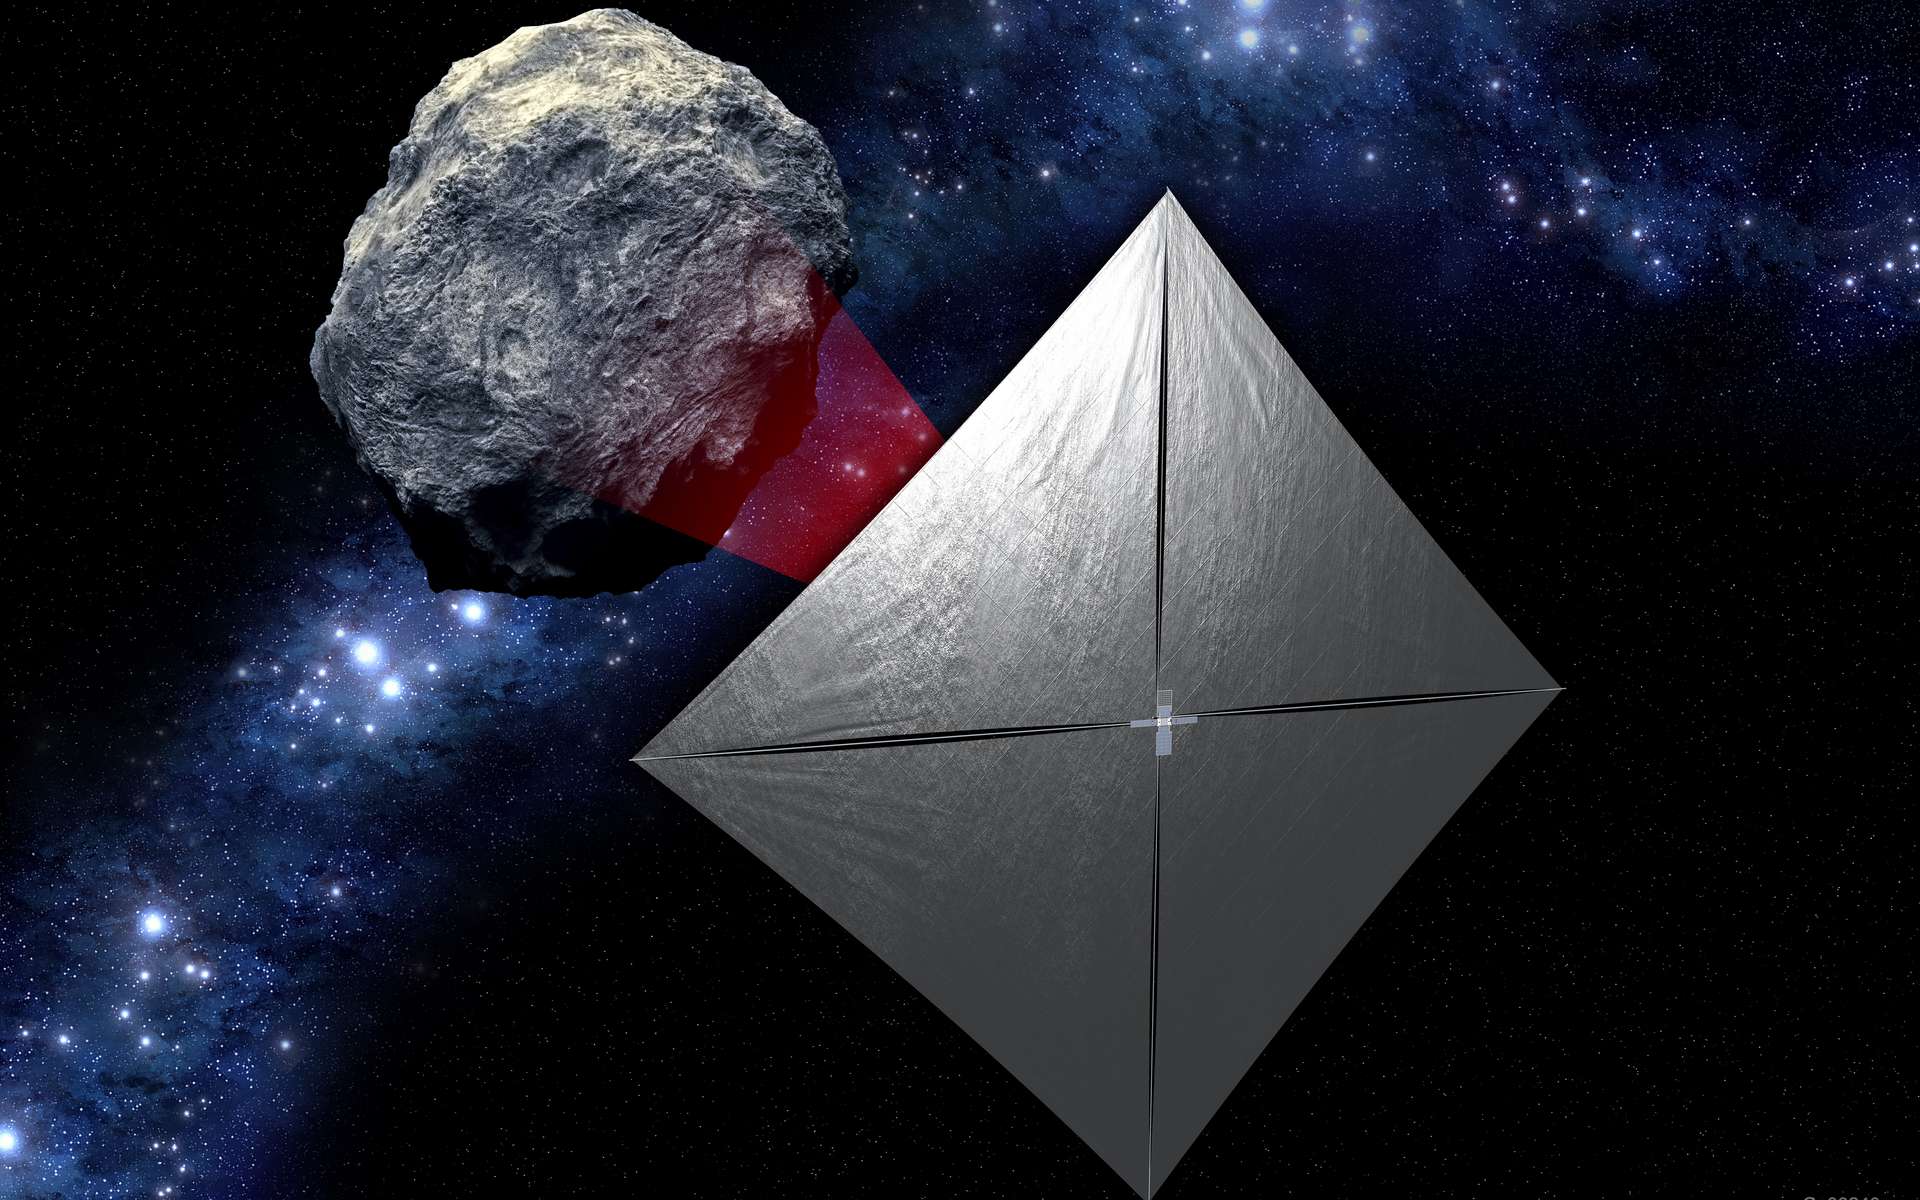 Représentation de la sonde NEA Scout, à proximité d'un astéroïde. © Nasa, JPL-Caltech